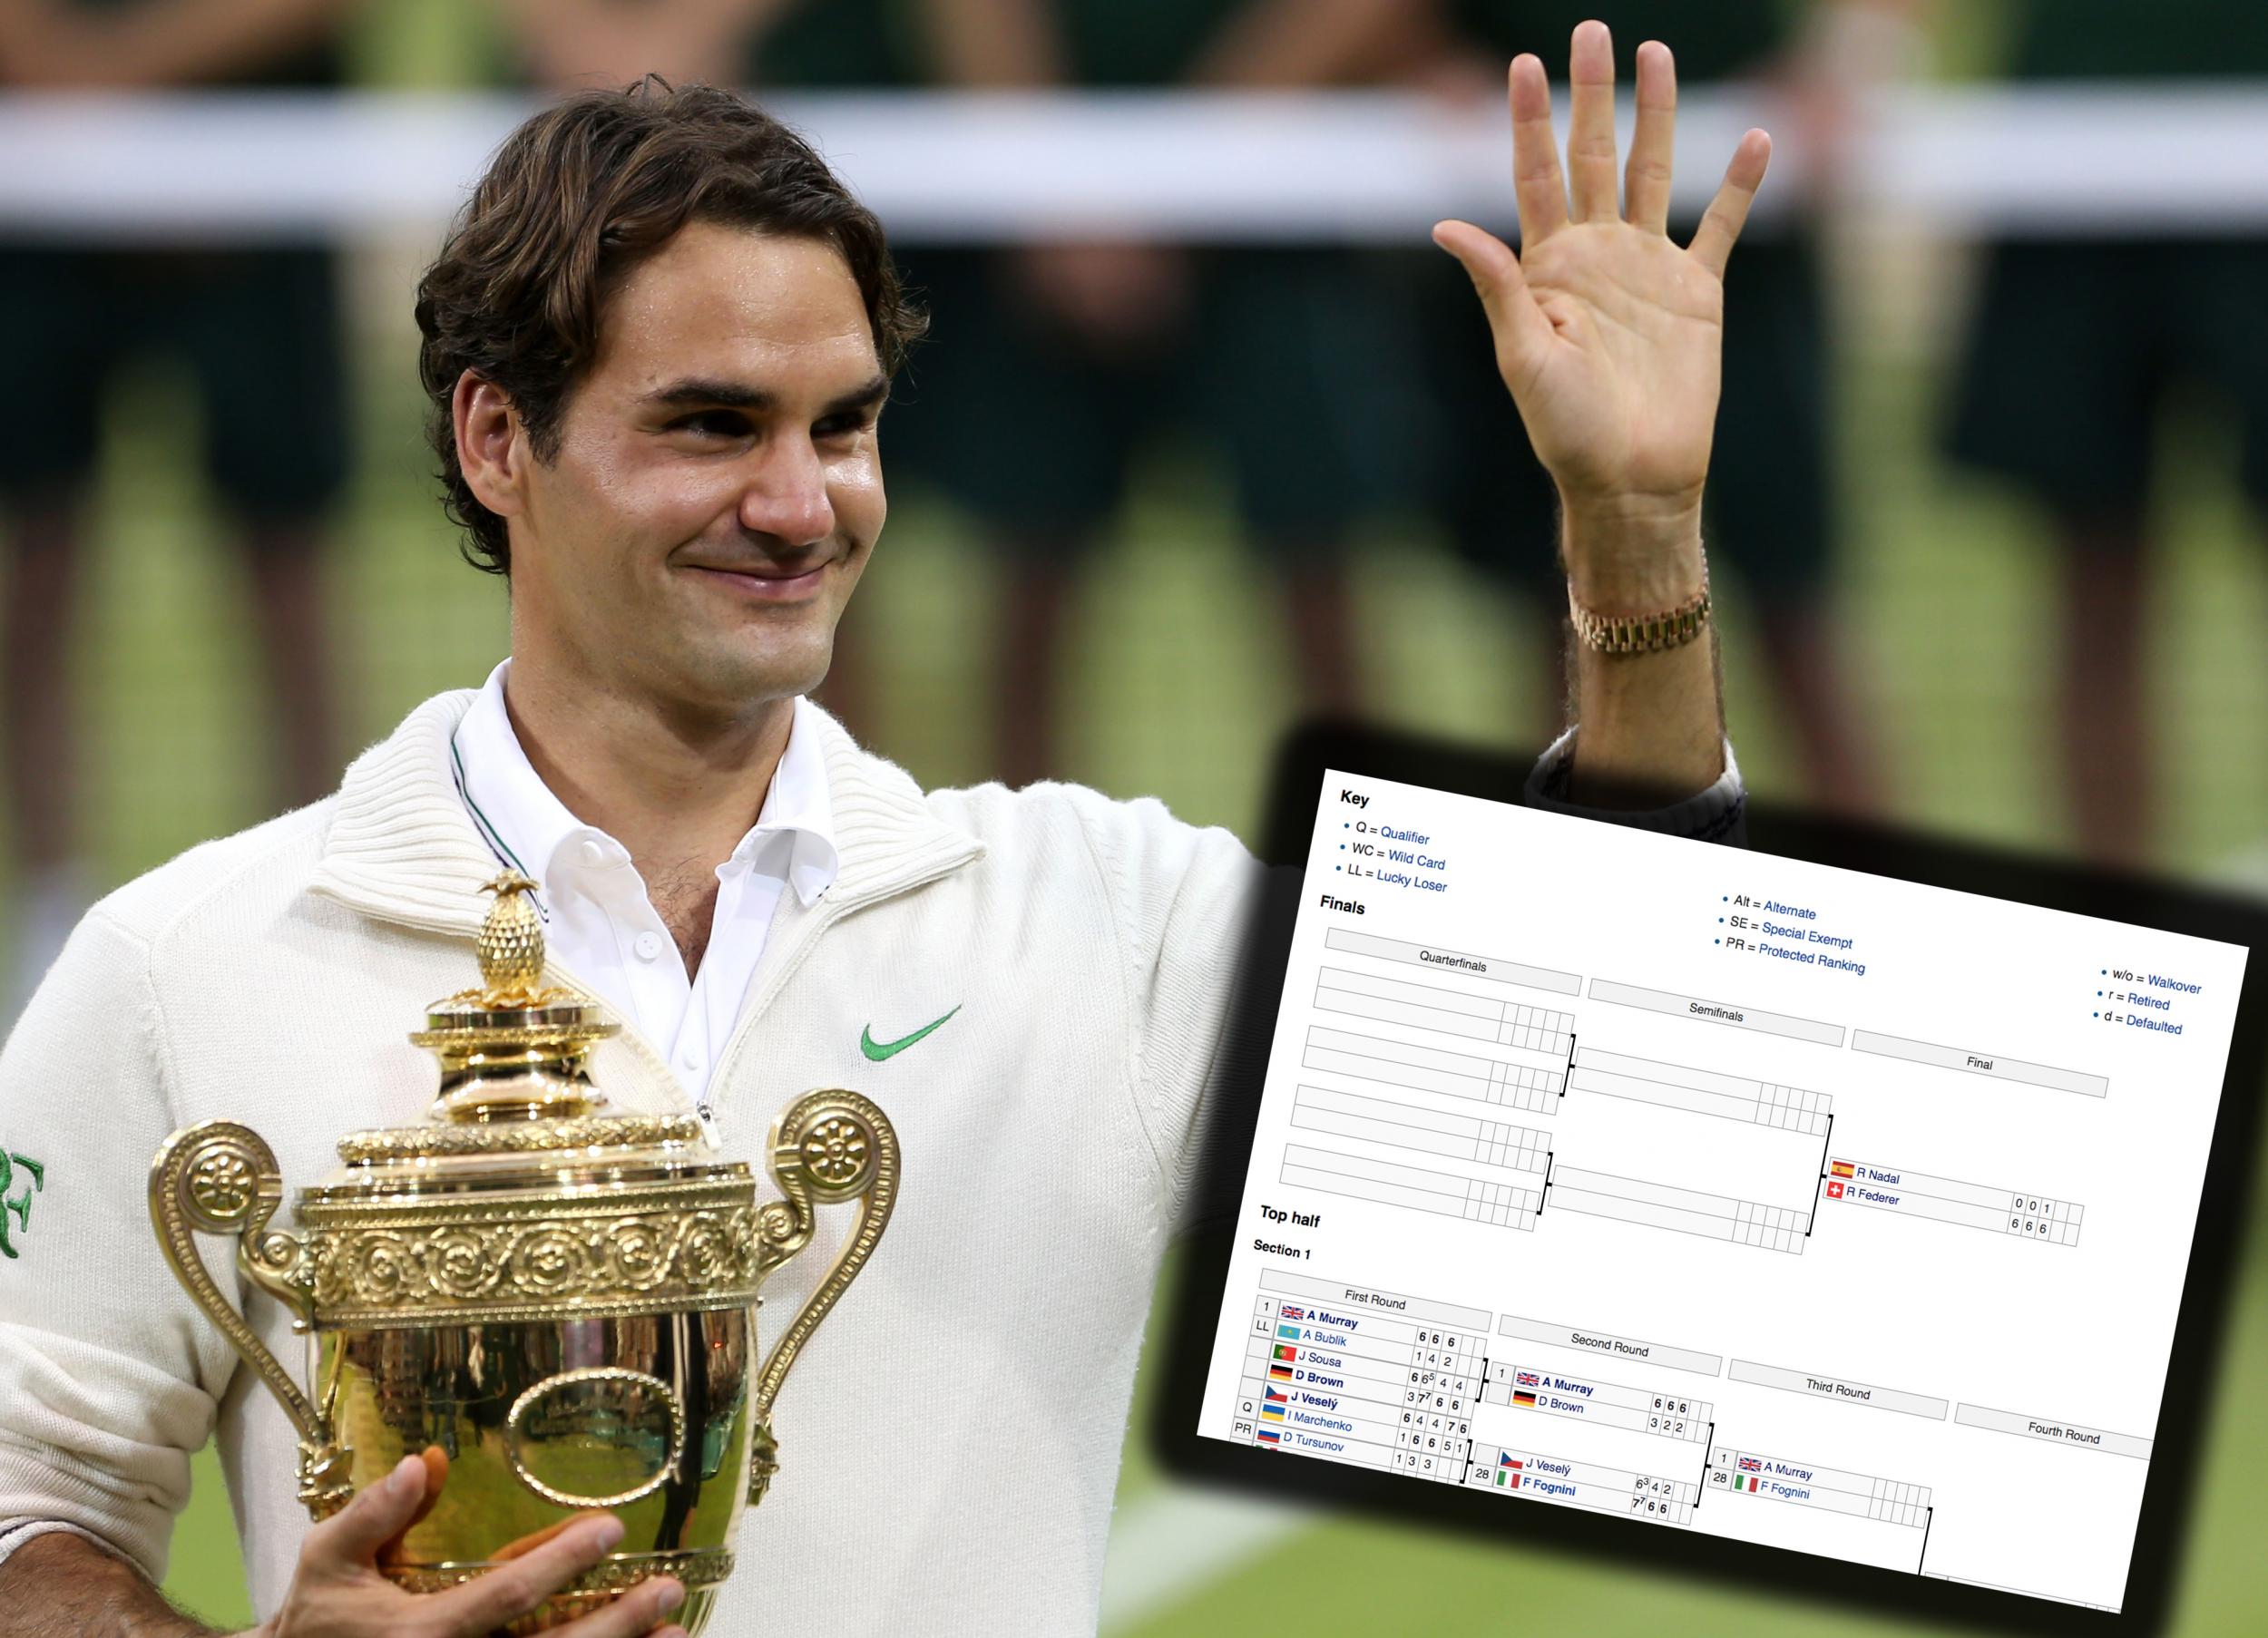 Wimbledon Championships - Wikipedia